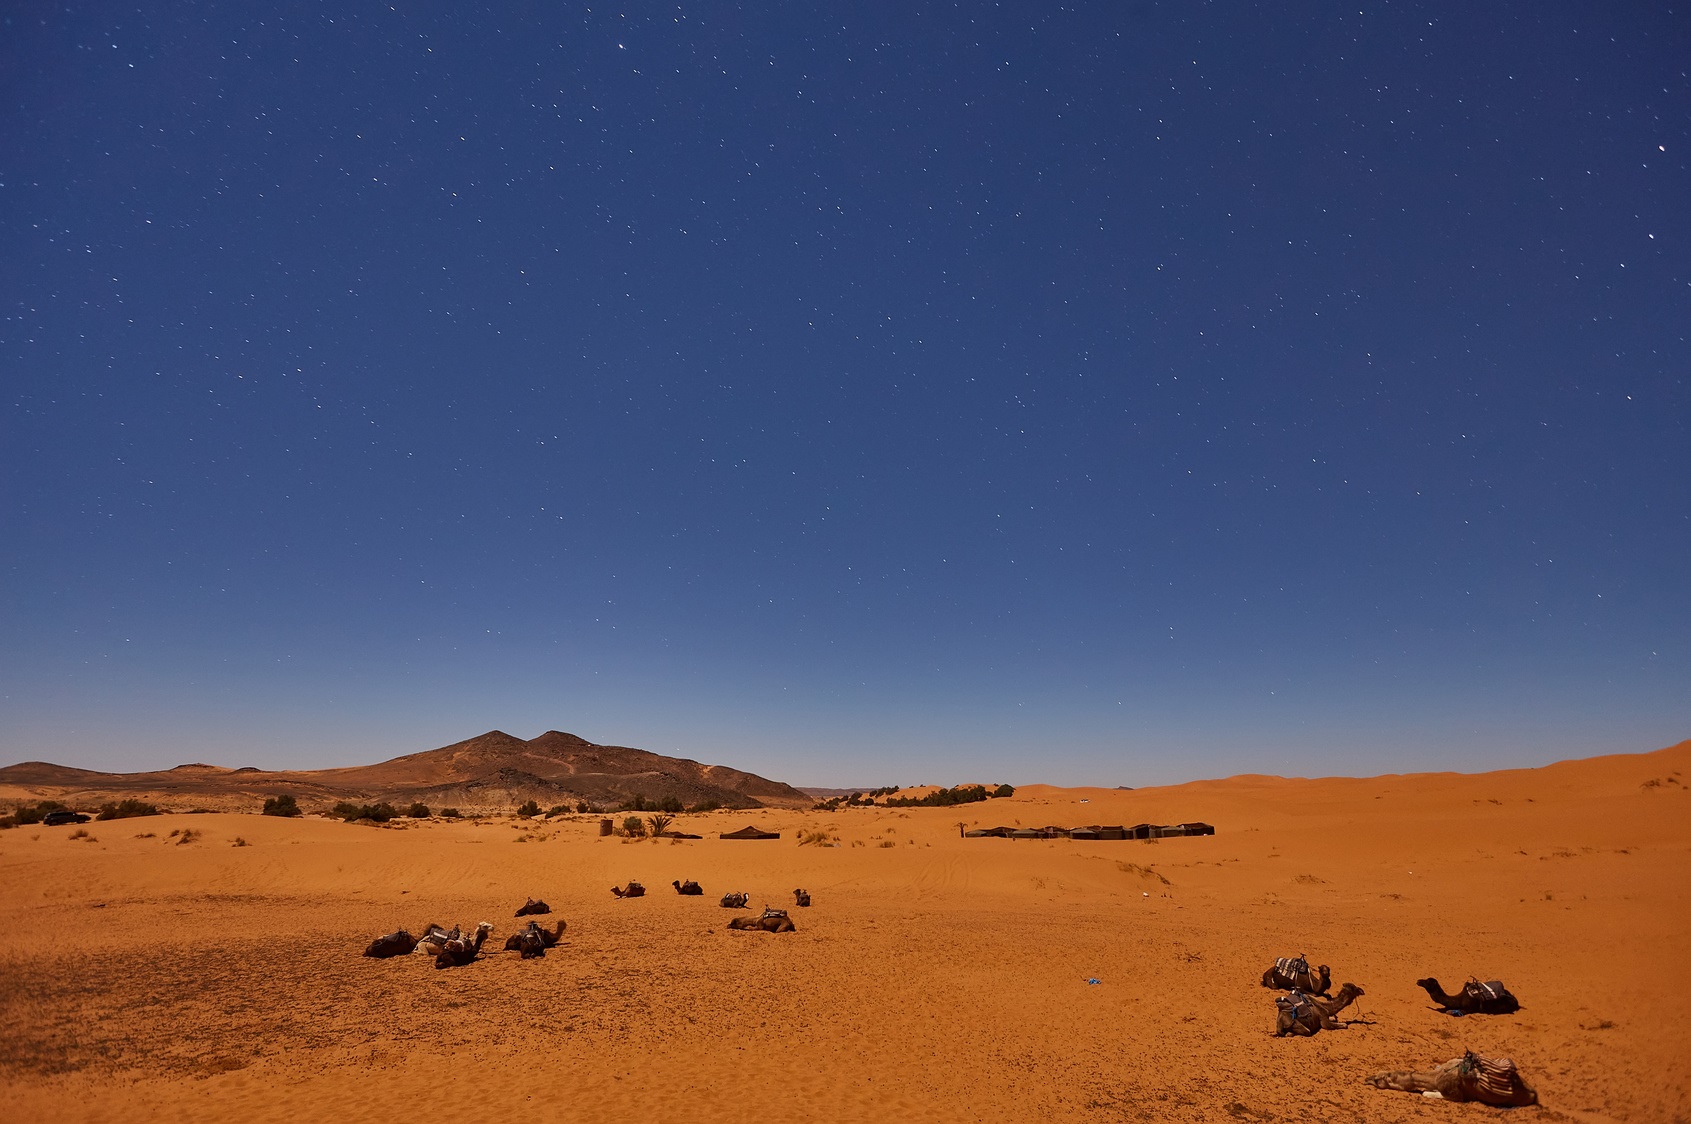 Les pays entourant le Sahara connaissent des températures moyennes supérieurs à 29 °C toute l'année. © Saharr, Fotolia